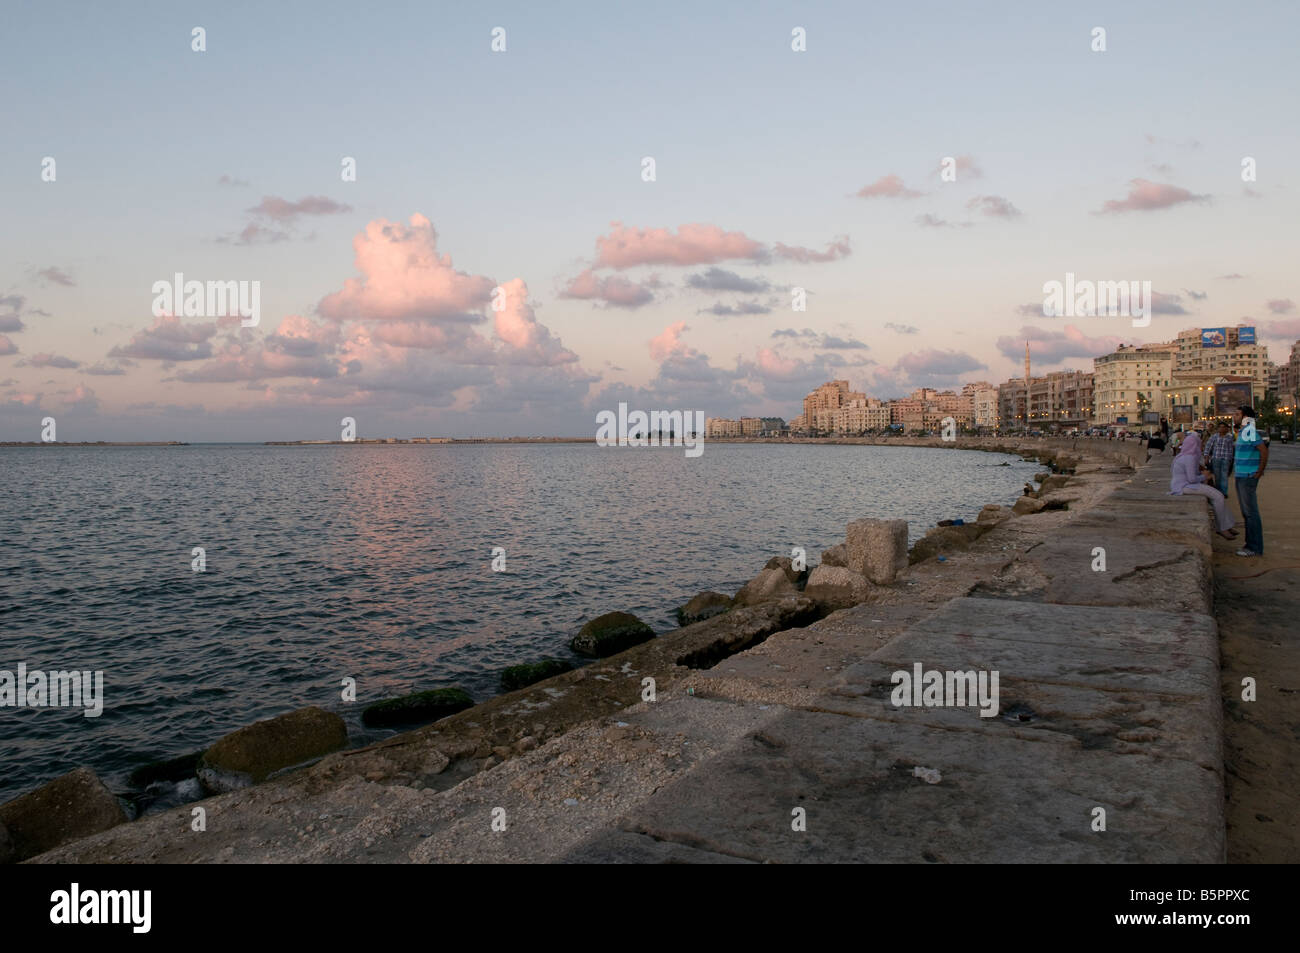 View of the waterfront promenade corniche in Alexandria Egypt Stock Photo